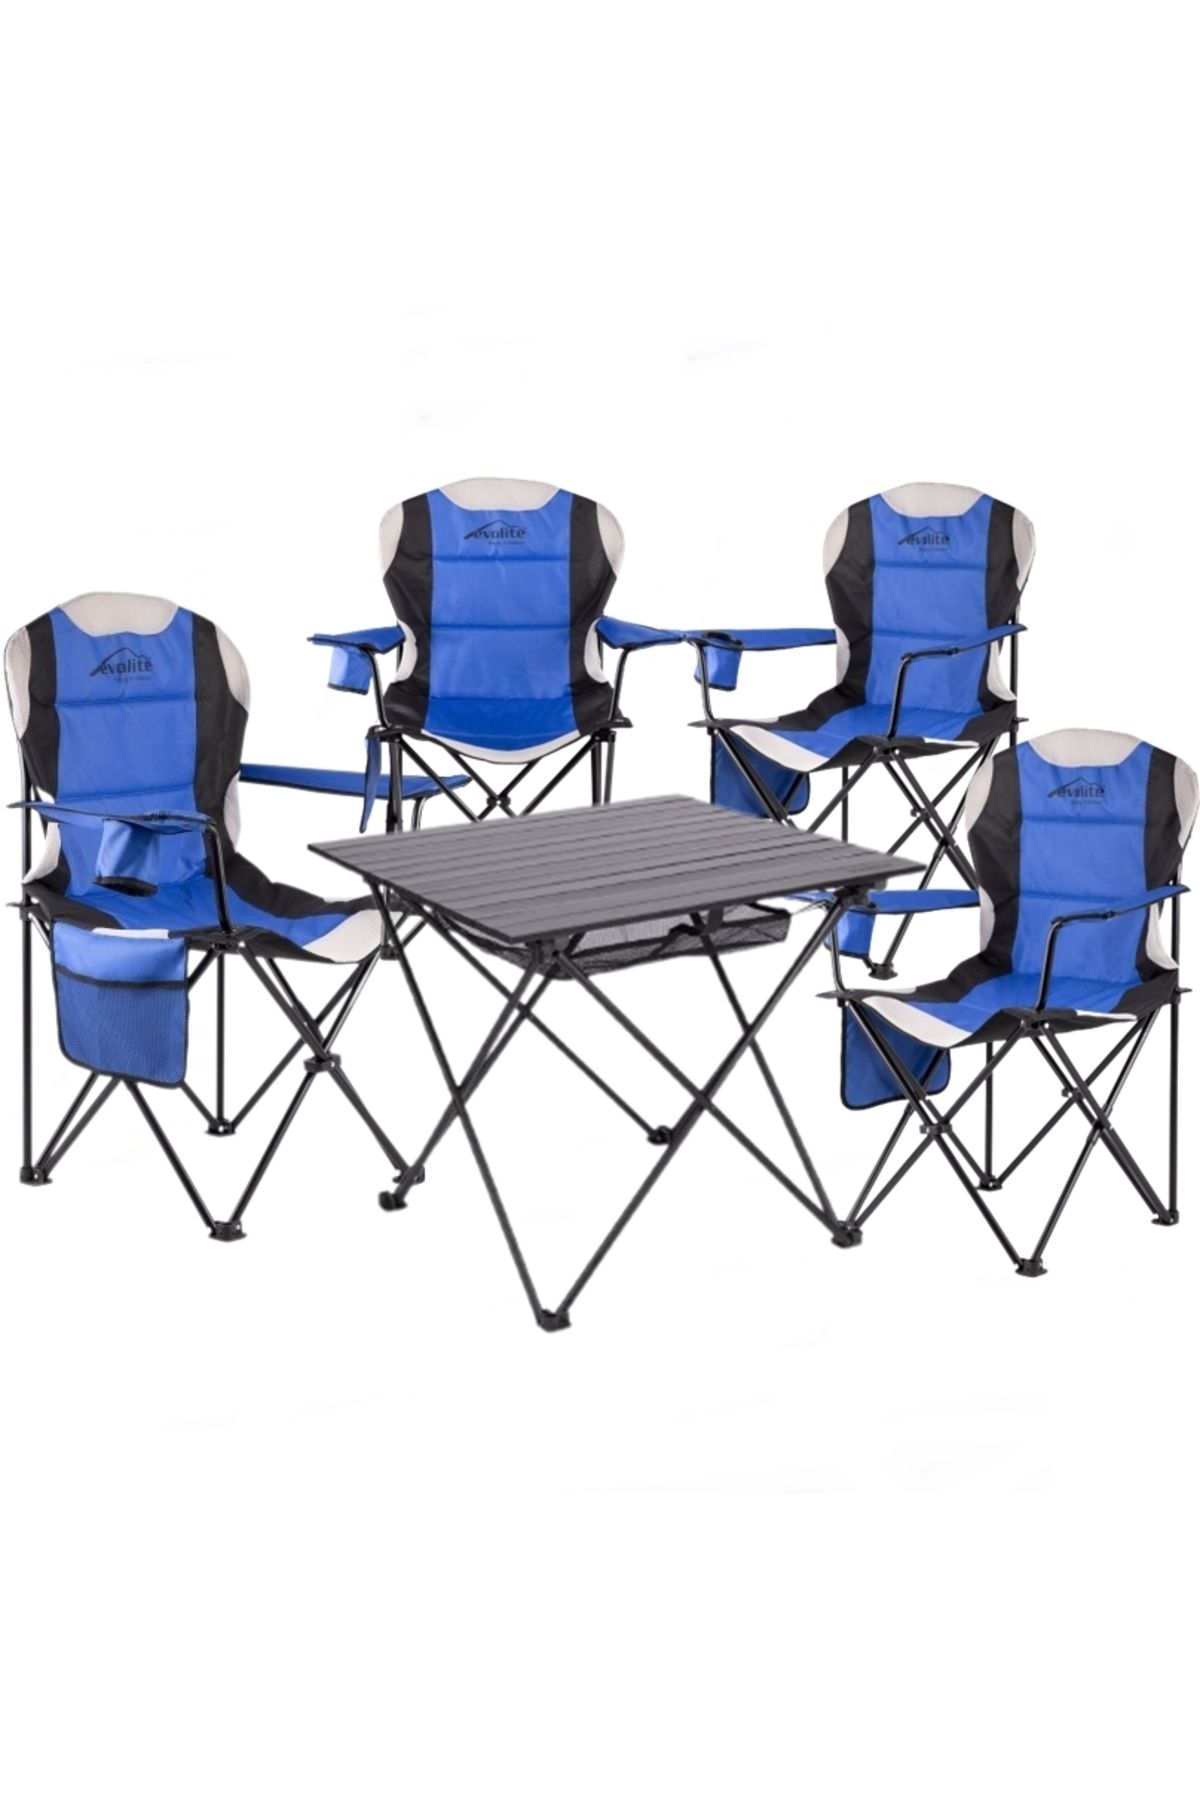 teknotrust Mavi  Katlanır Kamp Masası + 4 Adet Katlanır Kamp Sandalyesi Bahçe Balkon Piknik Tak